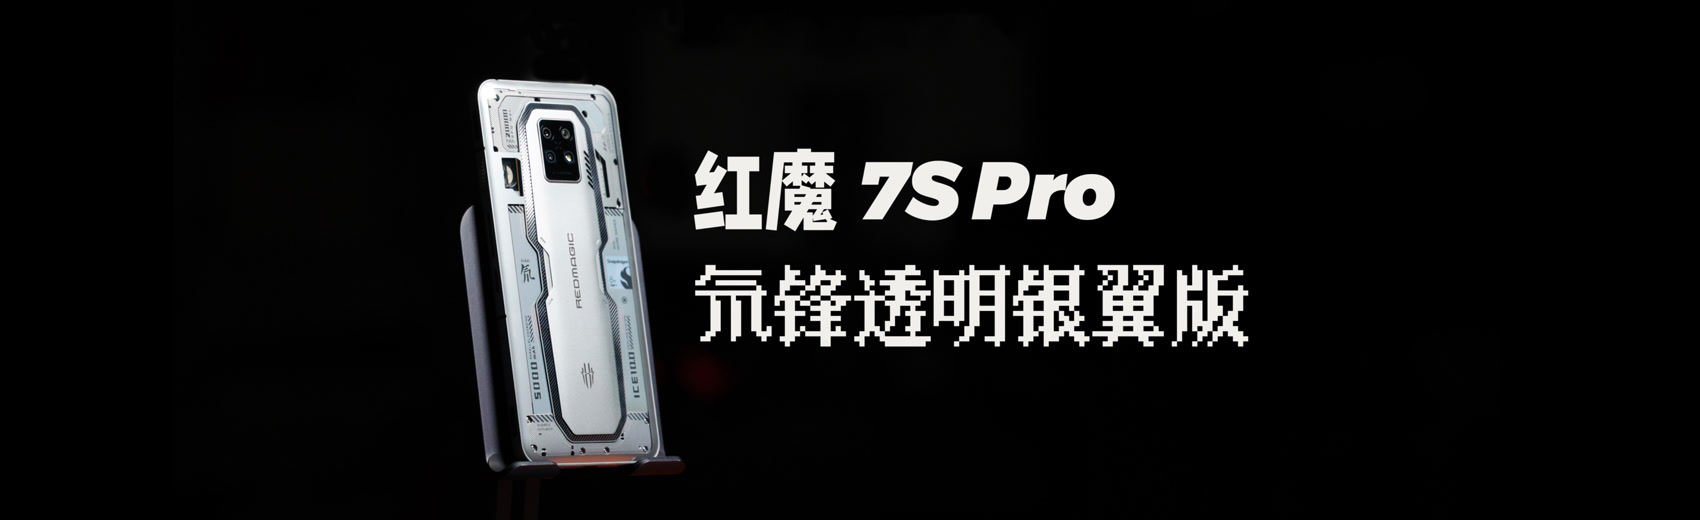 红魔7S Pro氘锋透明银翼版上手体验